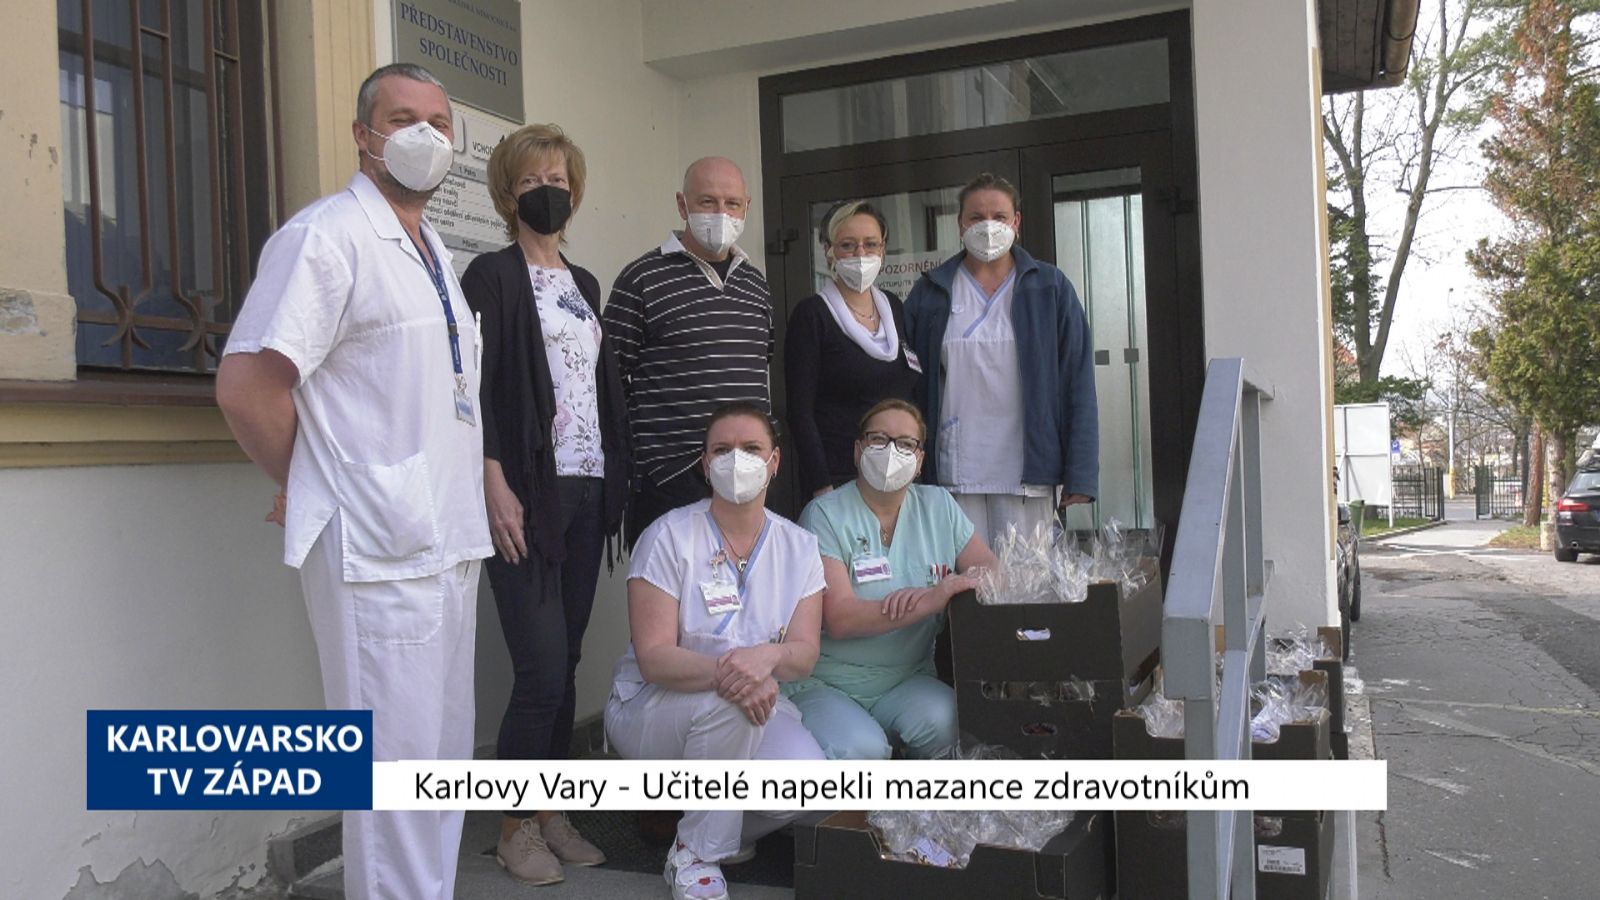 Karlovy Vary: Učitelé napekli mazance zdravotníkům (TV Západ)